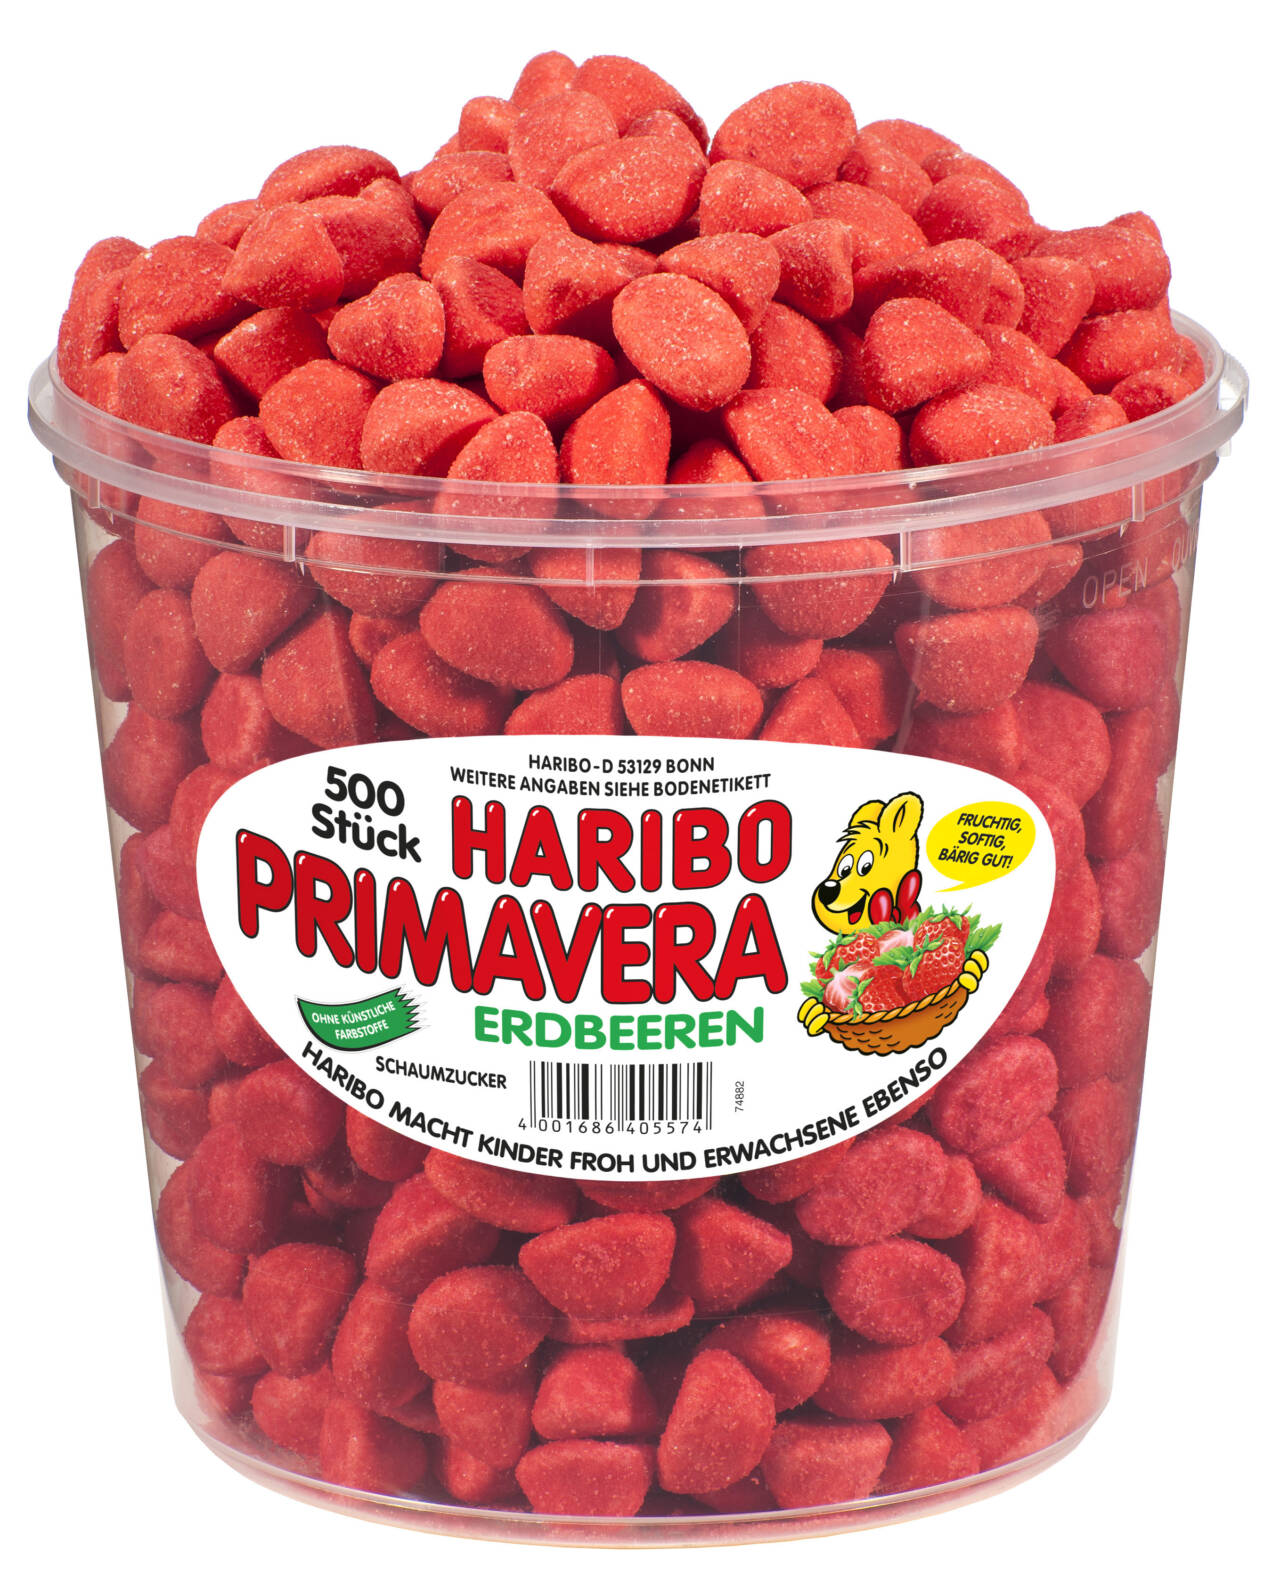 Haribo Erdbeeren Primavera 500 Stück